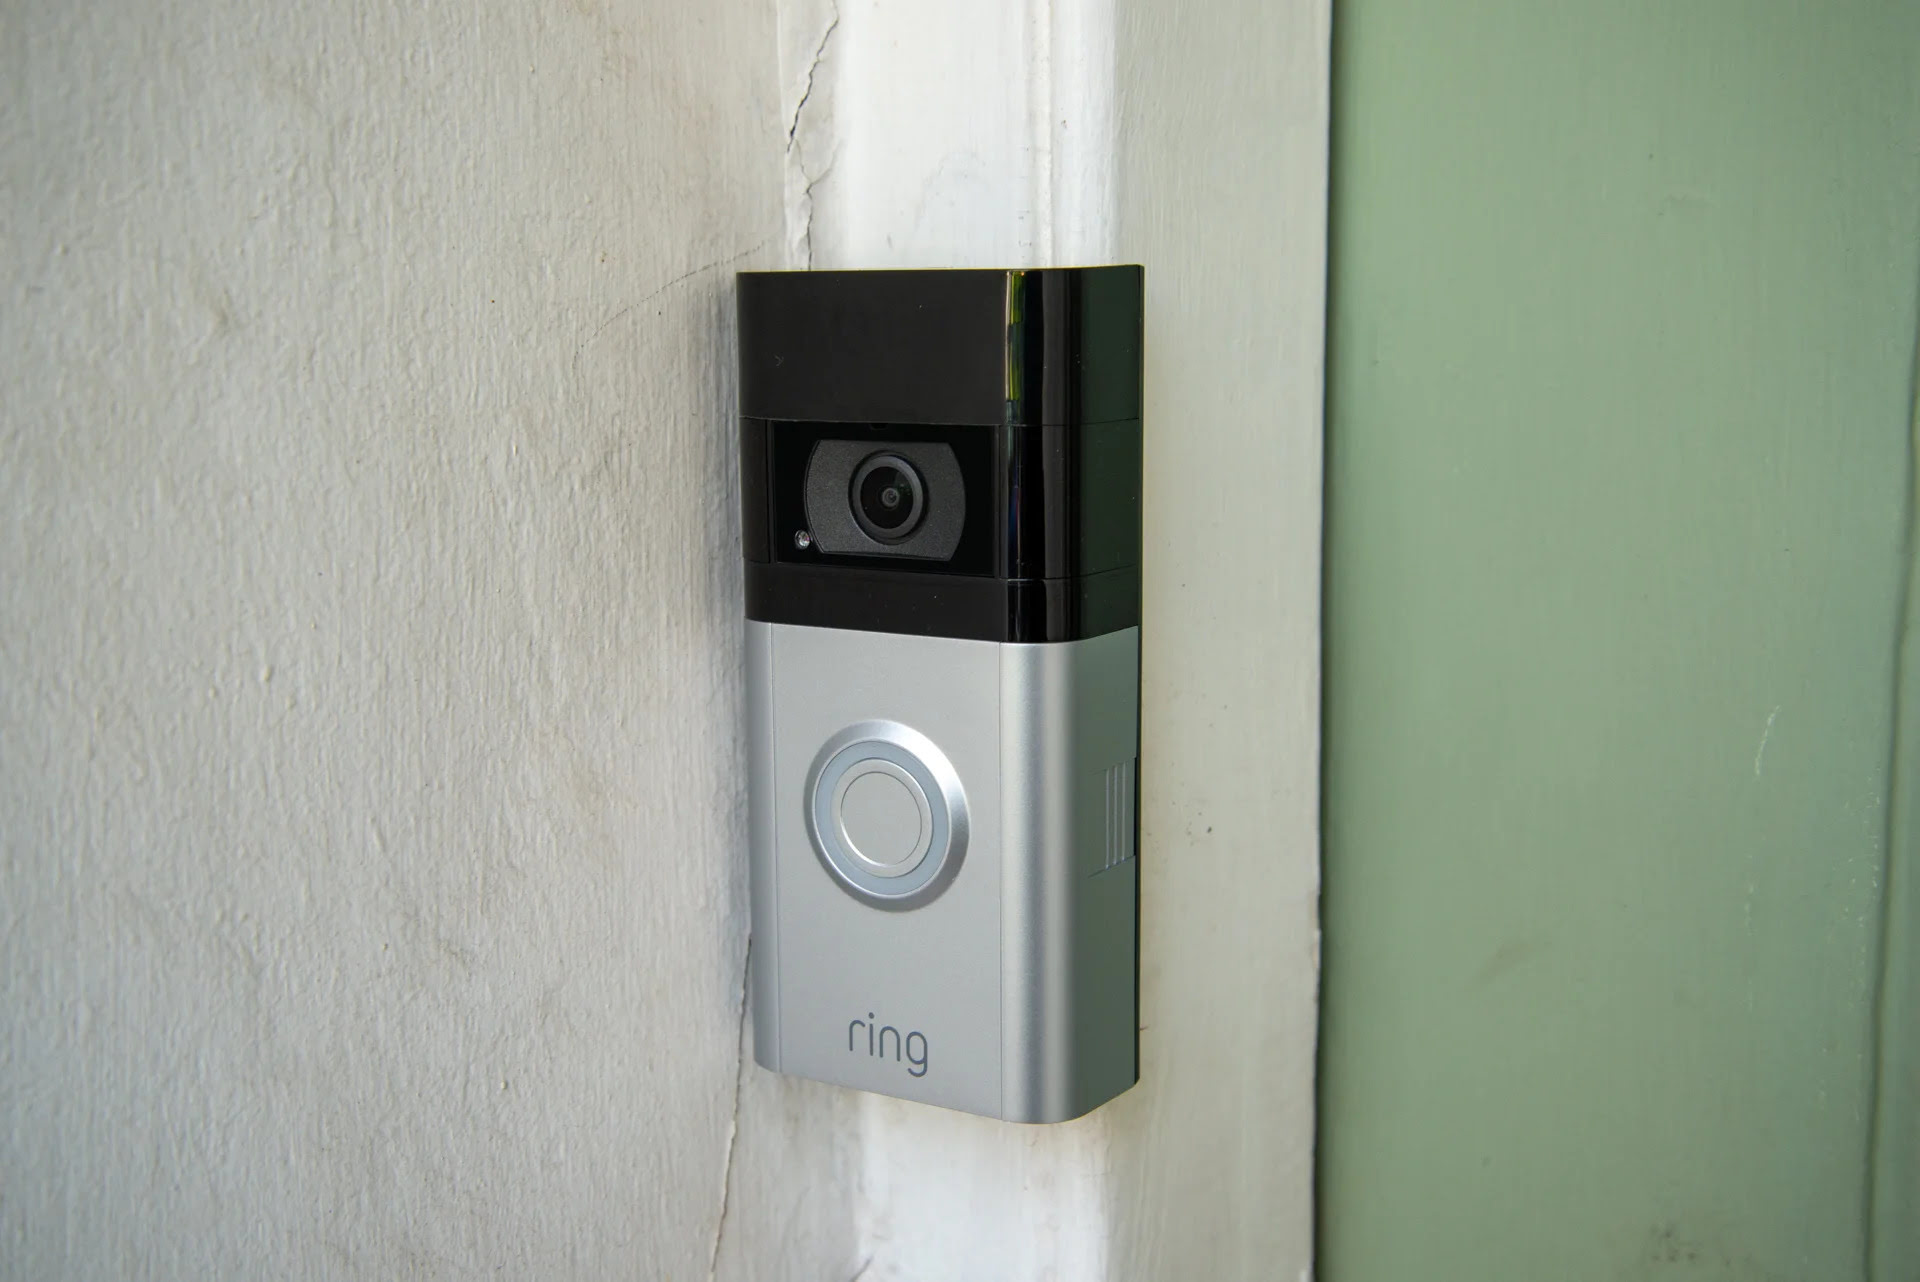 How To Reprogram Ring Doorbell